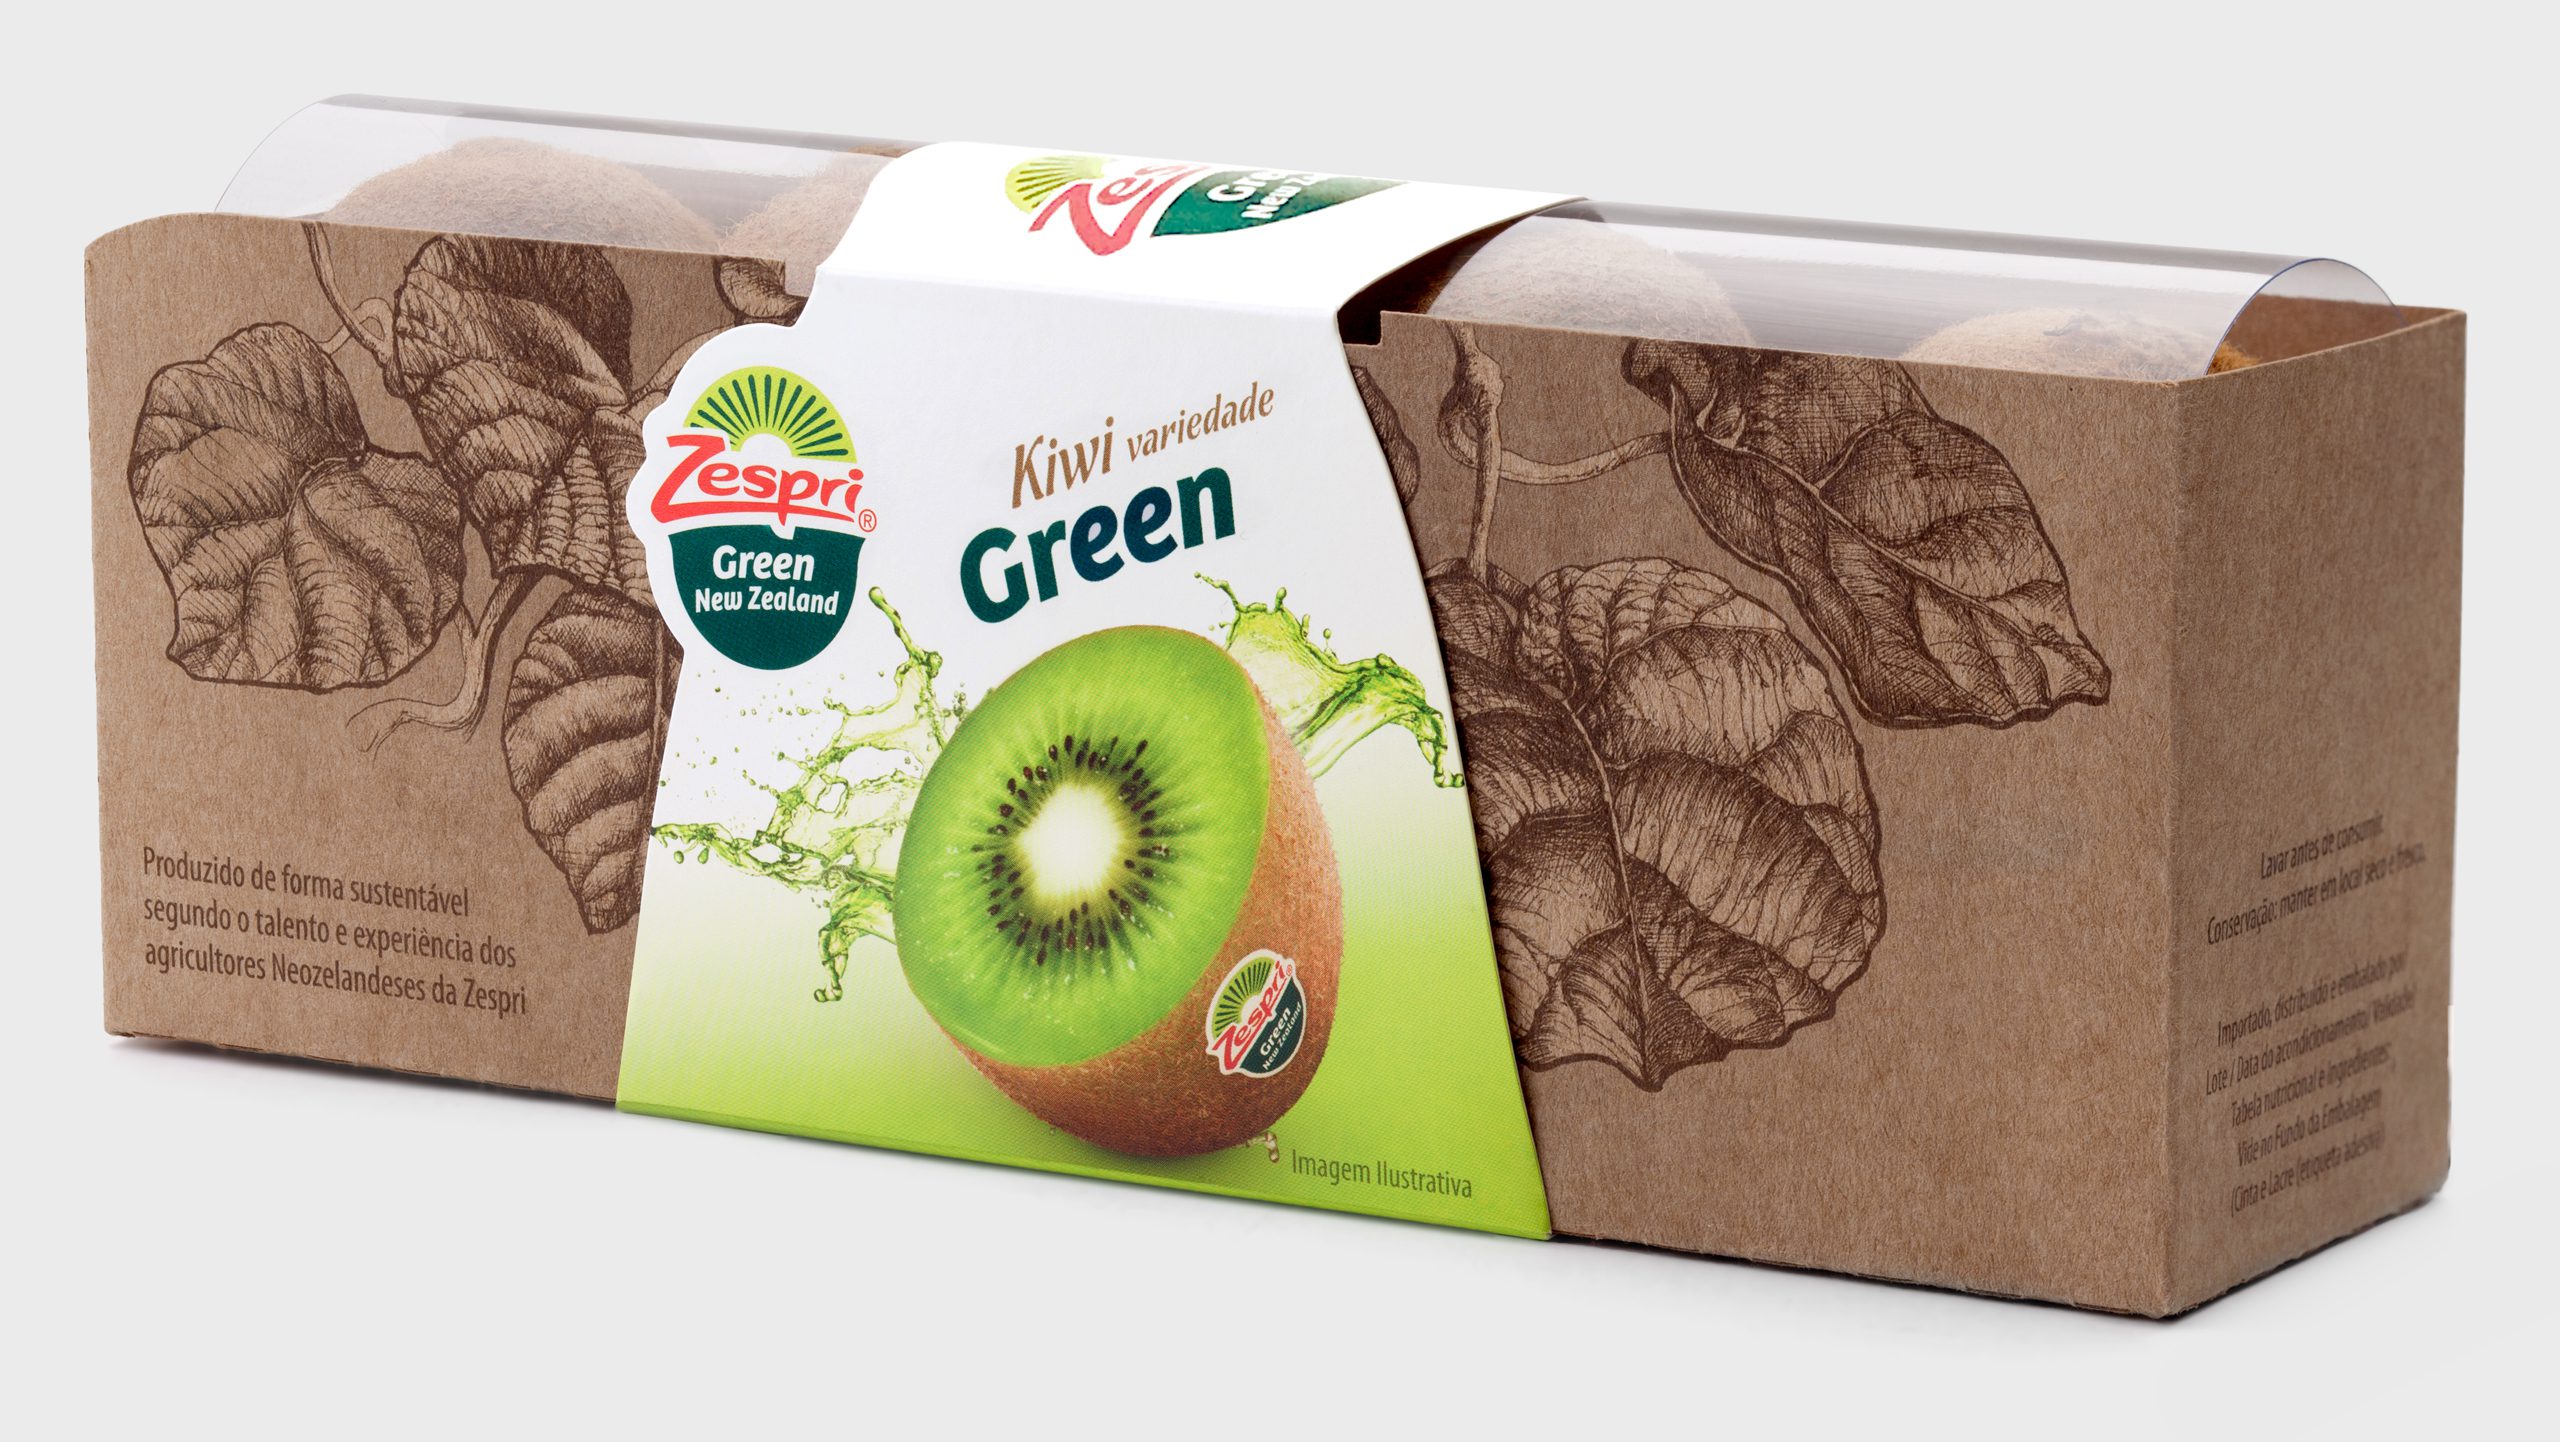 Design de embalagens de lançamento dos kiwis Green da Zespri no Brasil | Assinado pela Brandium